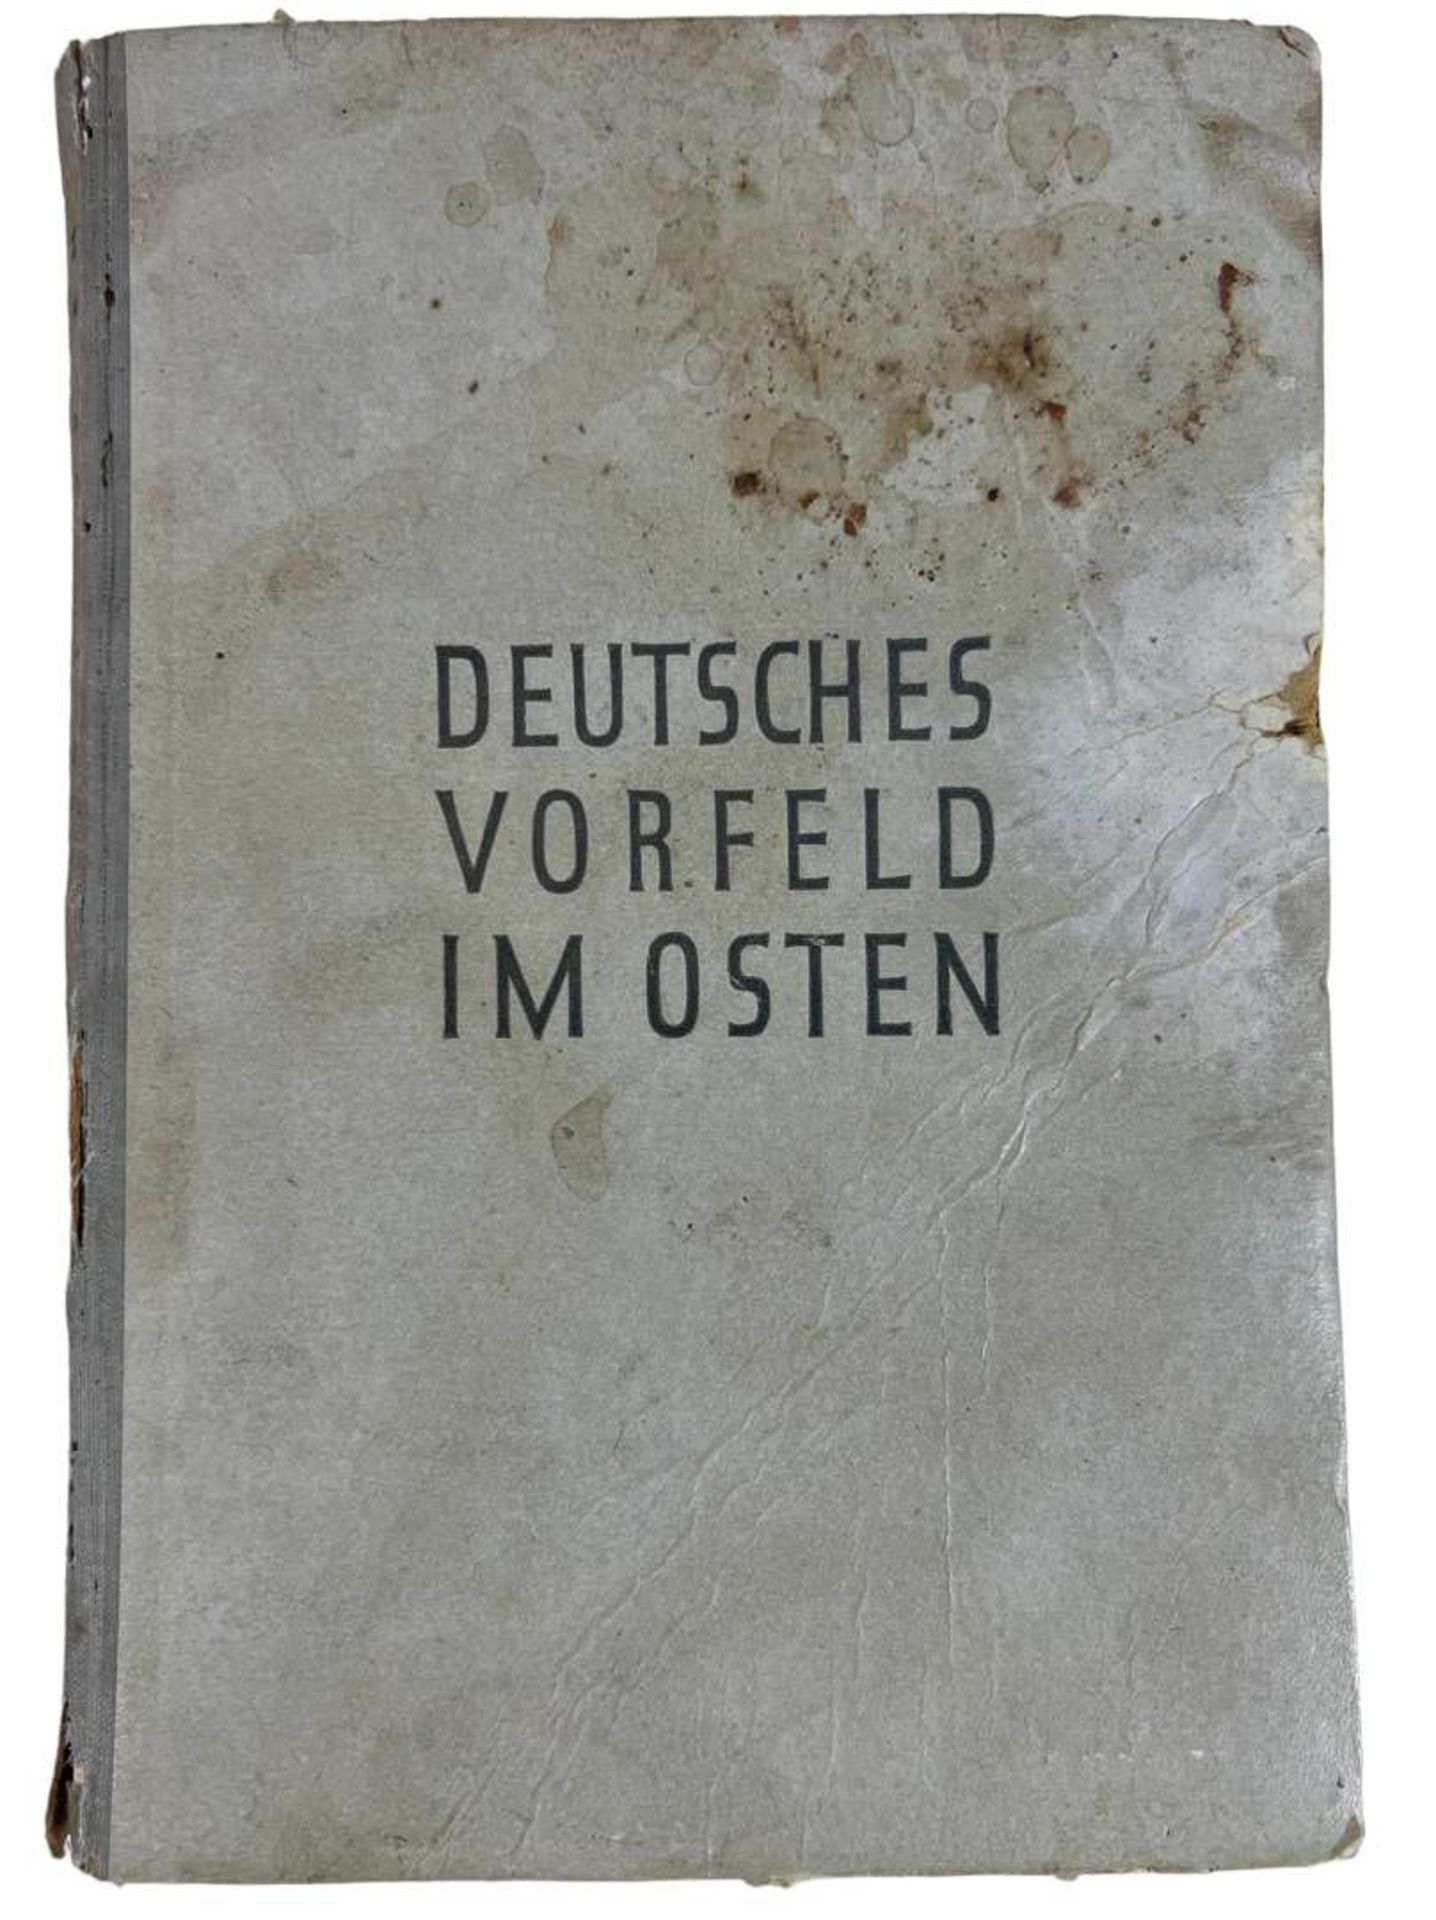 WW2 German Propaganda Book "Deutsches Vorfeld im Osten"